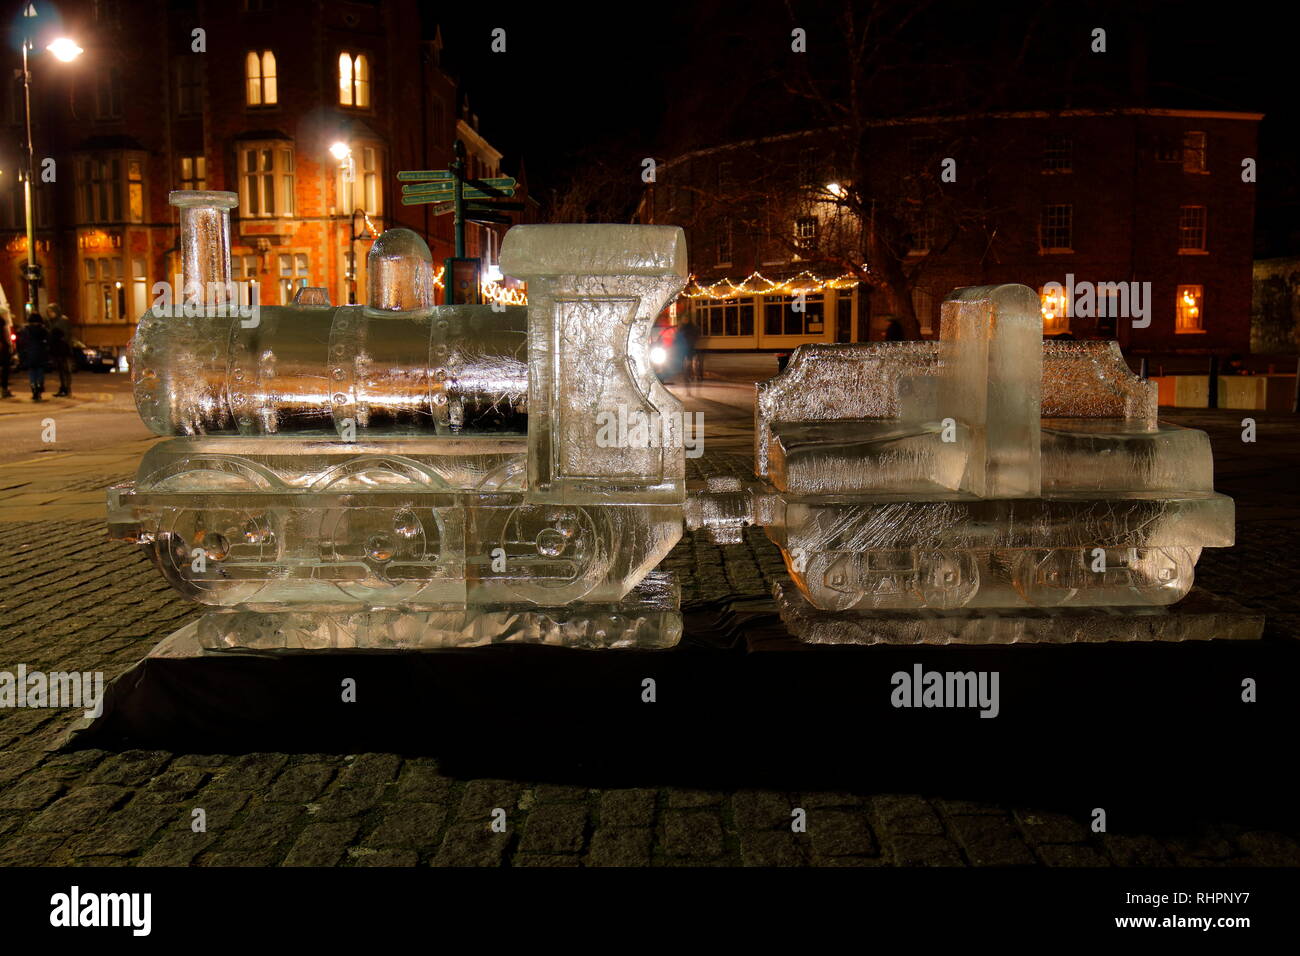 Un train à vapeur sculpture de glace à l'extérieur de la cathédrale de York, qui fait partie de la glace de New York Sculpture Trail. Banque D'Images